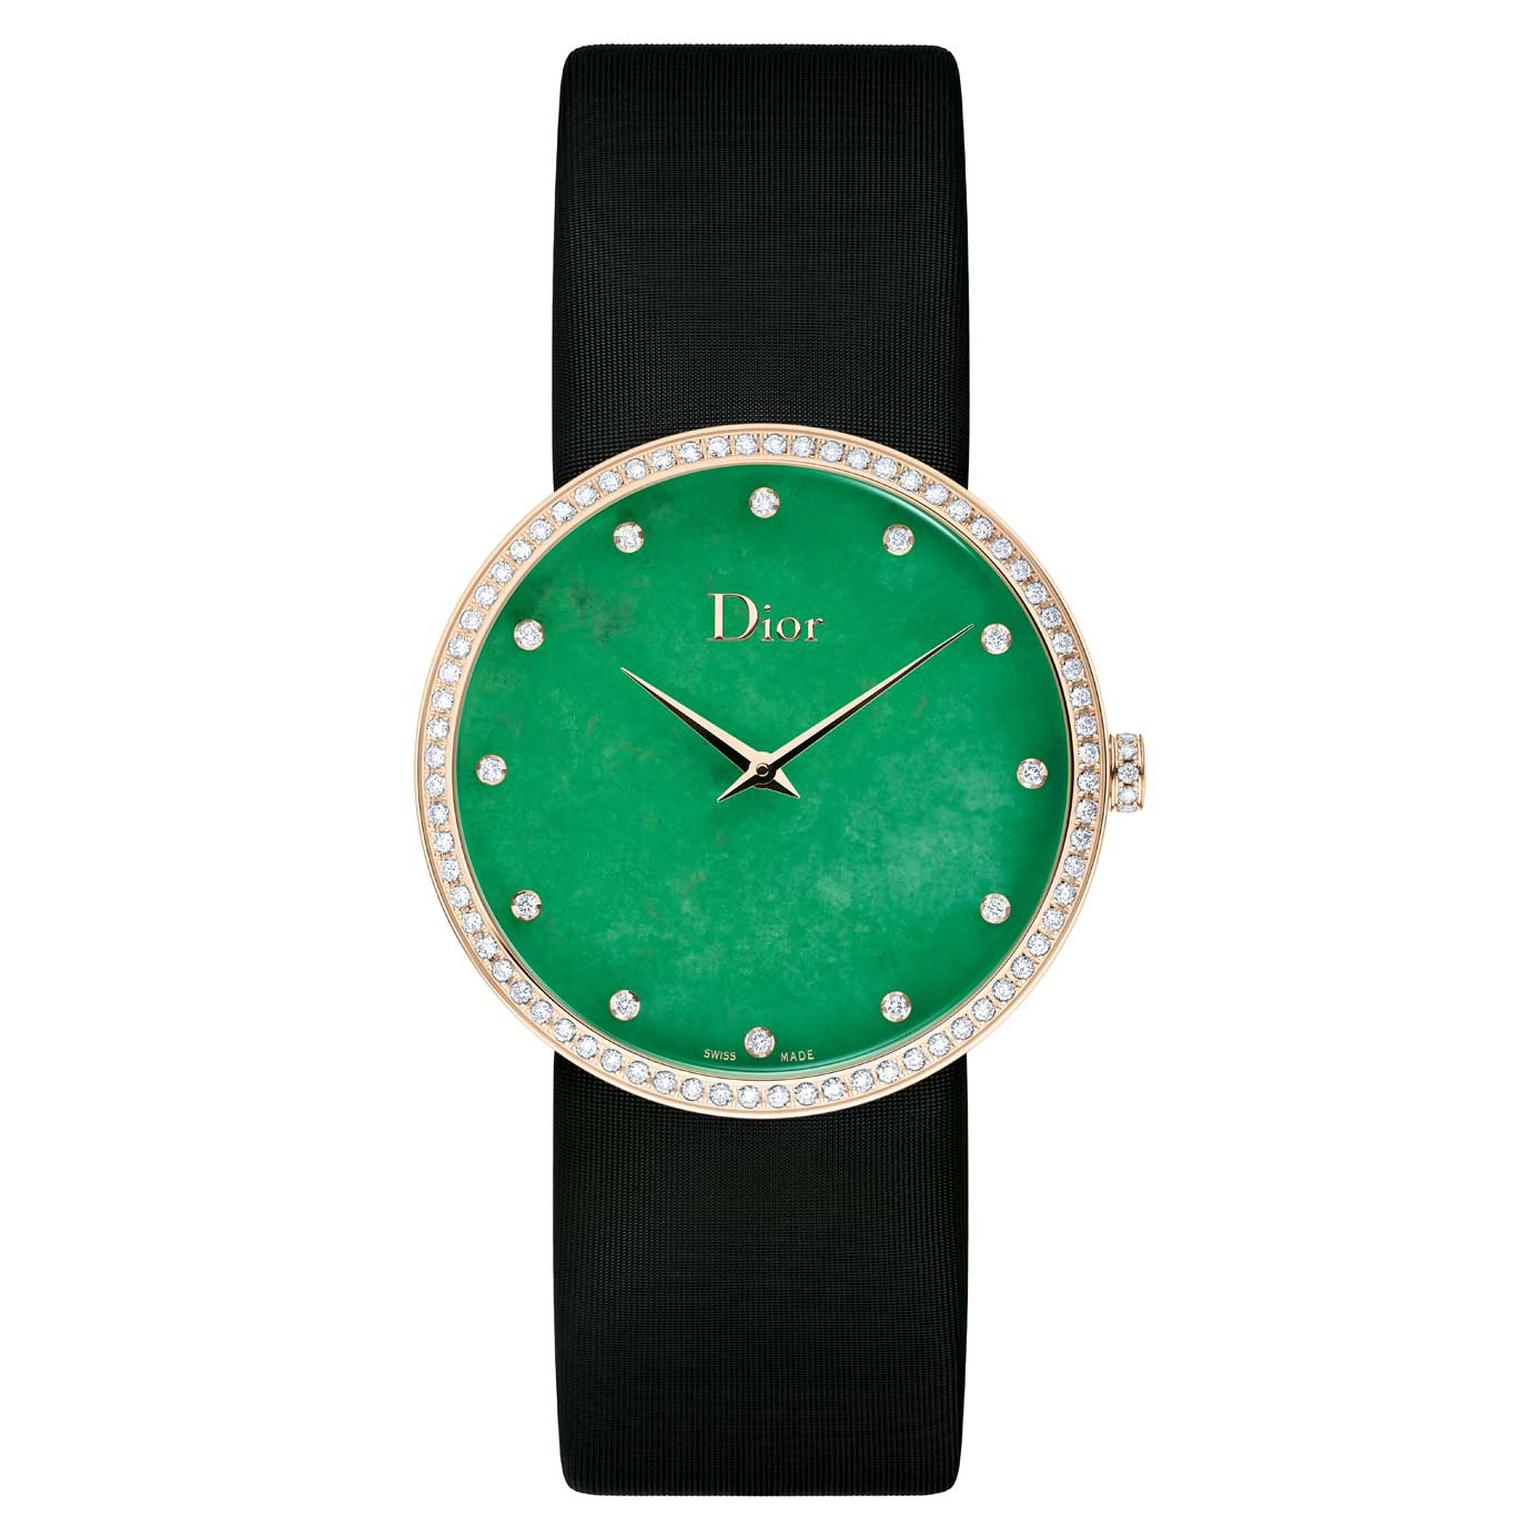 La-D-de-Dior-gold-watch-with-jade-dial